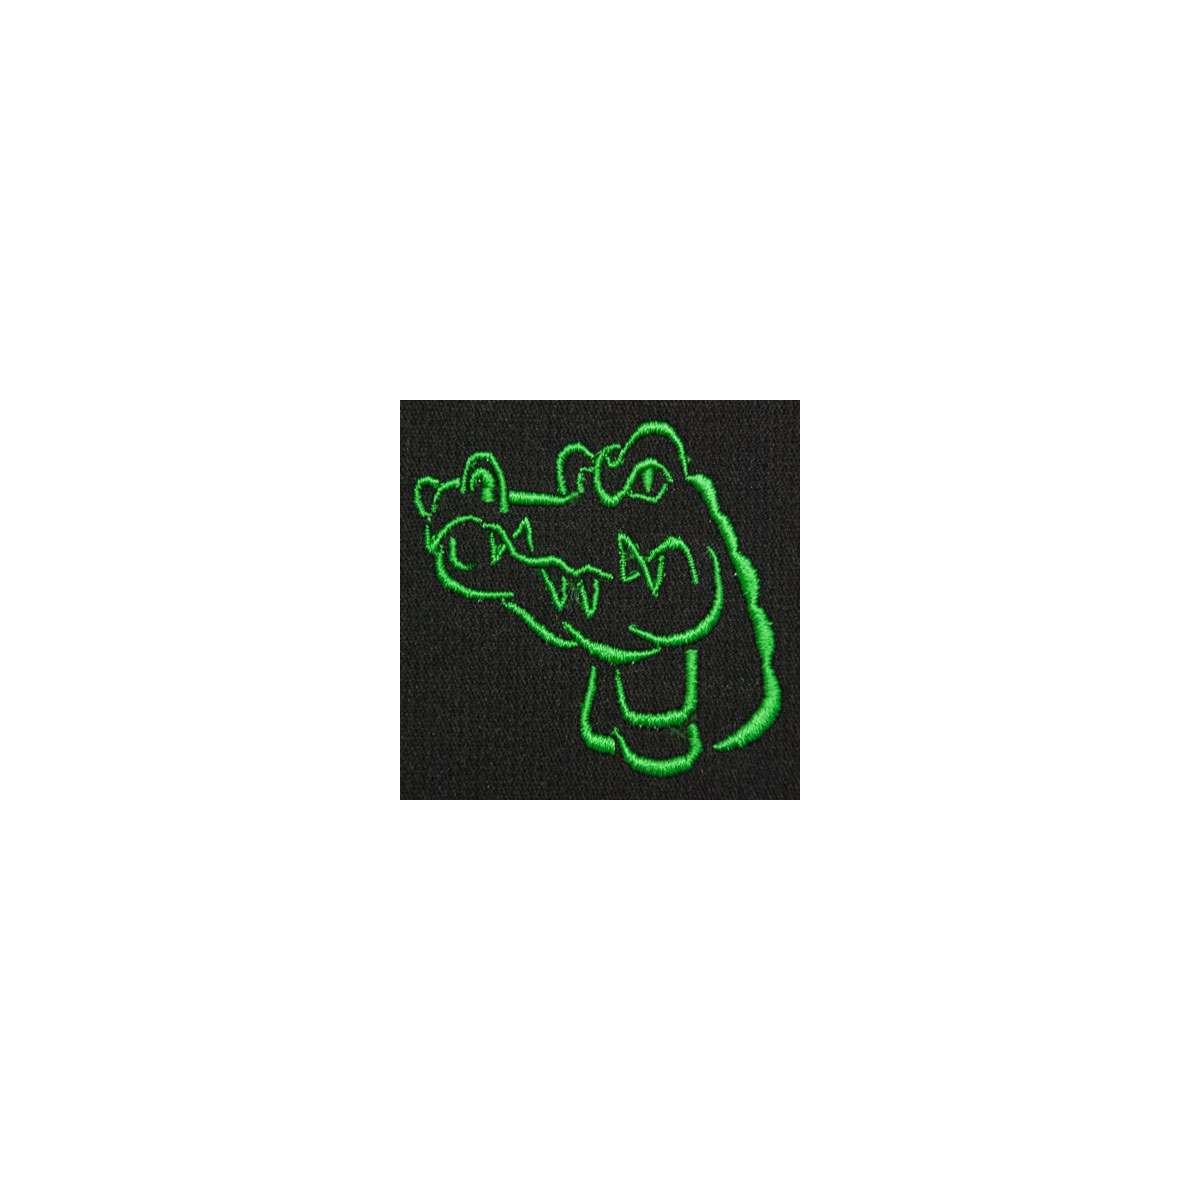 Gator Monogram Mascot (MM110)